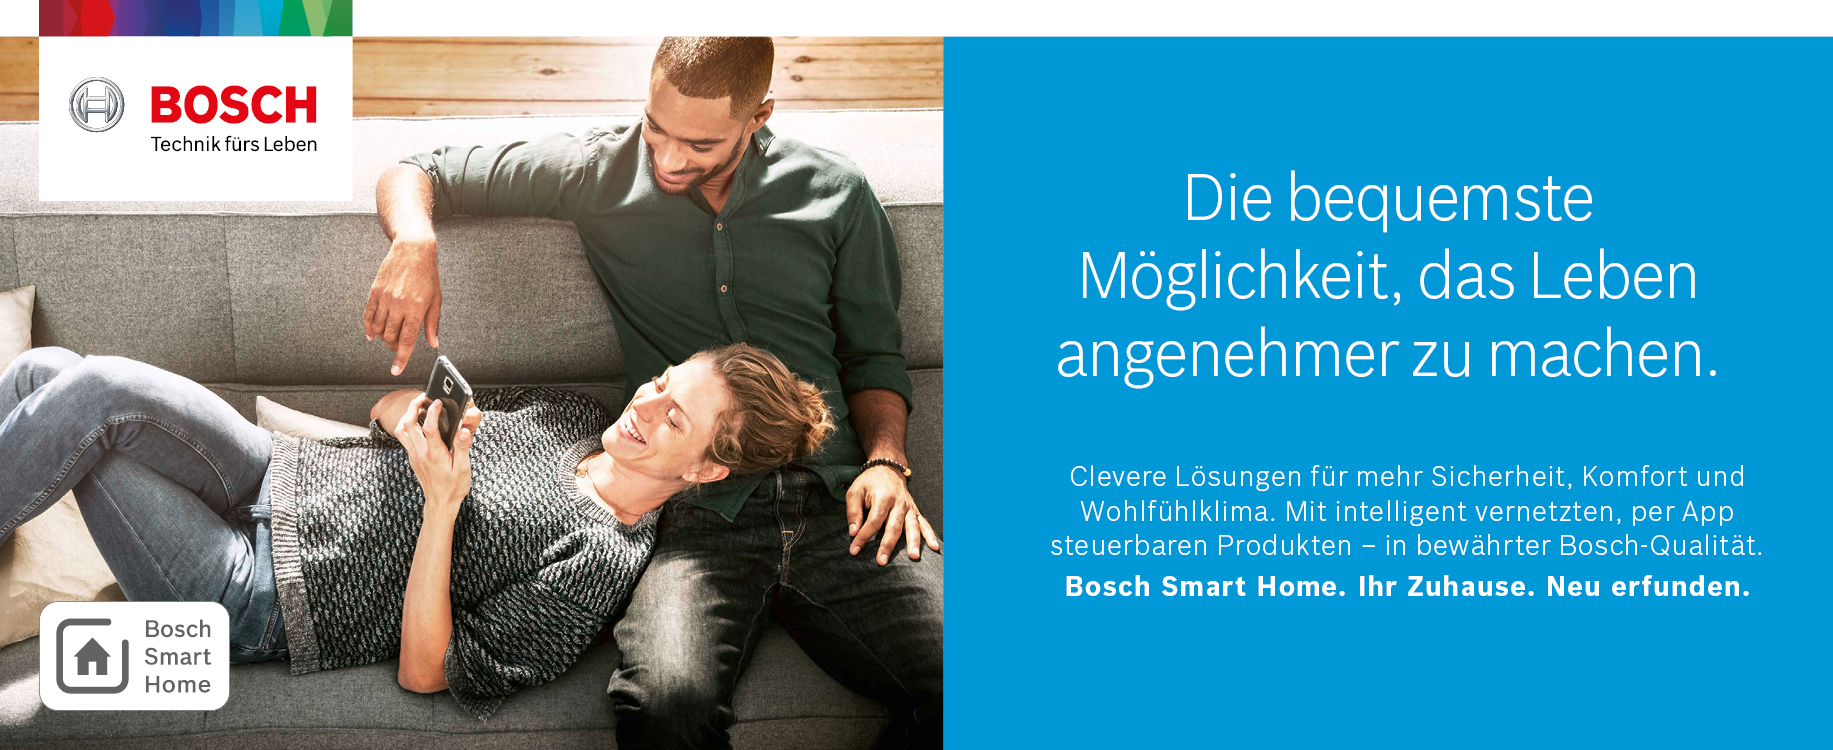 Smart Home von Bosch